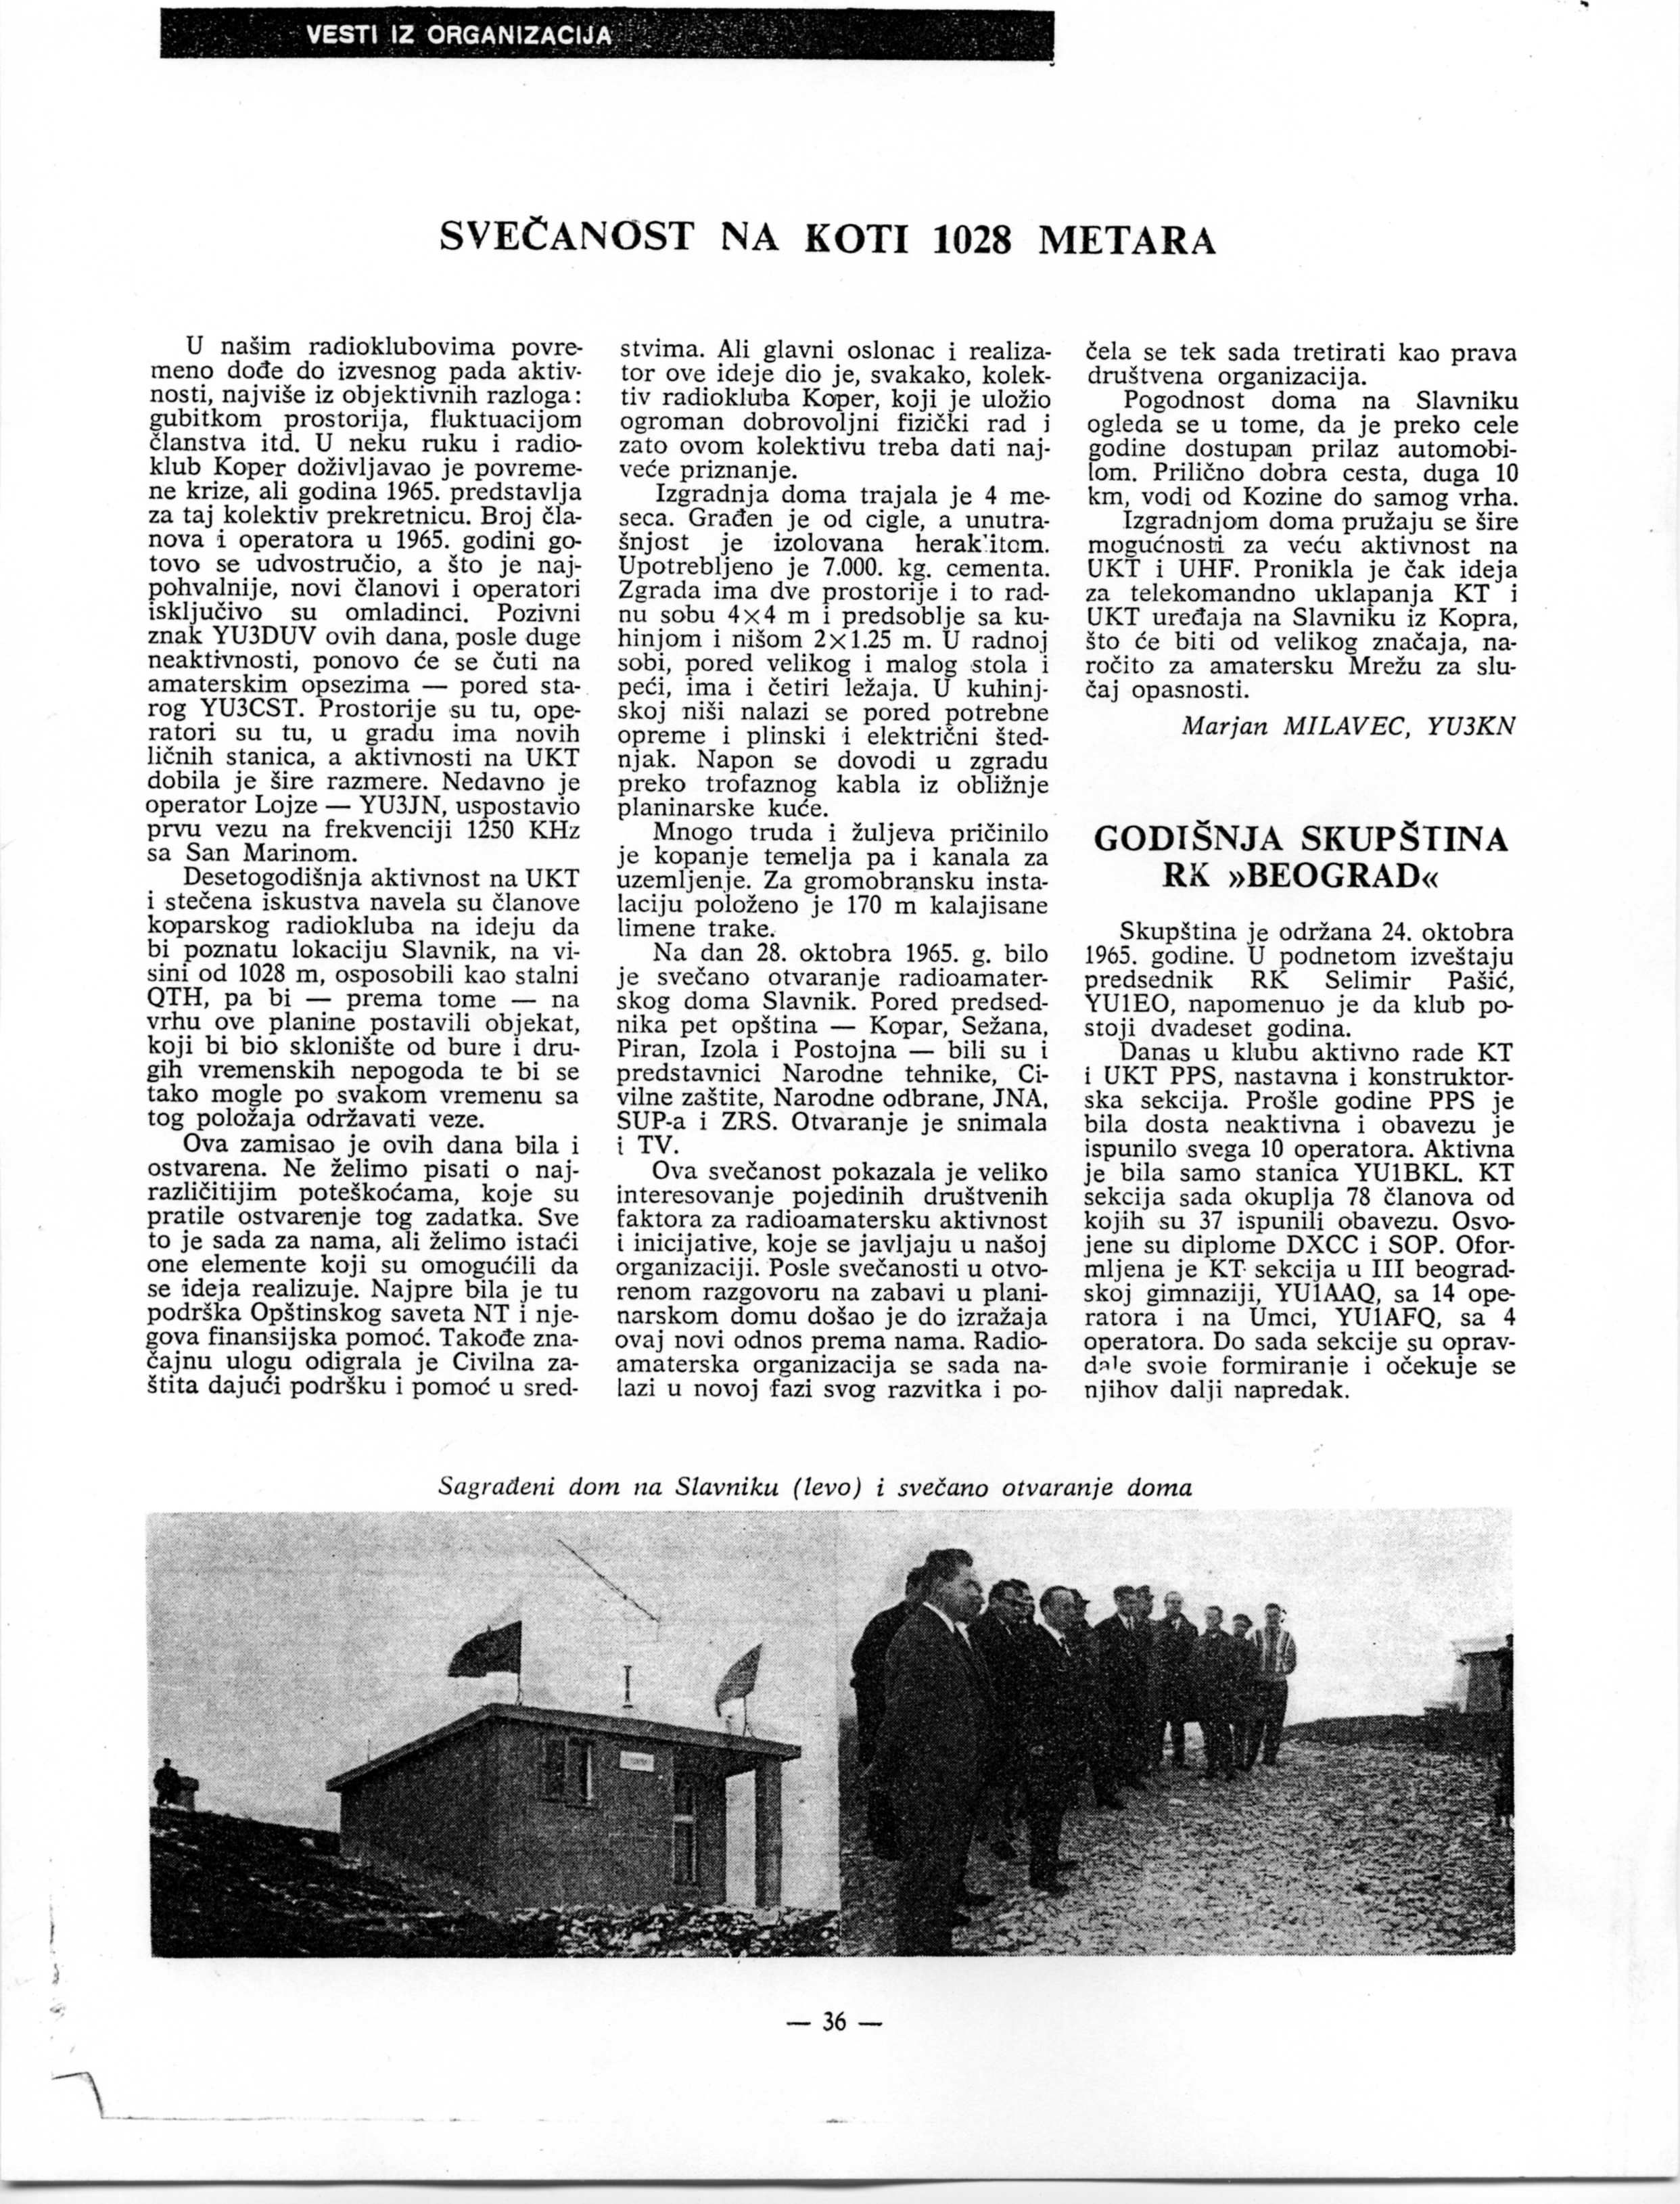 Članek o otvoritvi koče na Slavniku v "Radioamaterju" - 1965